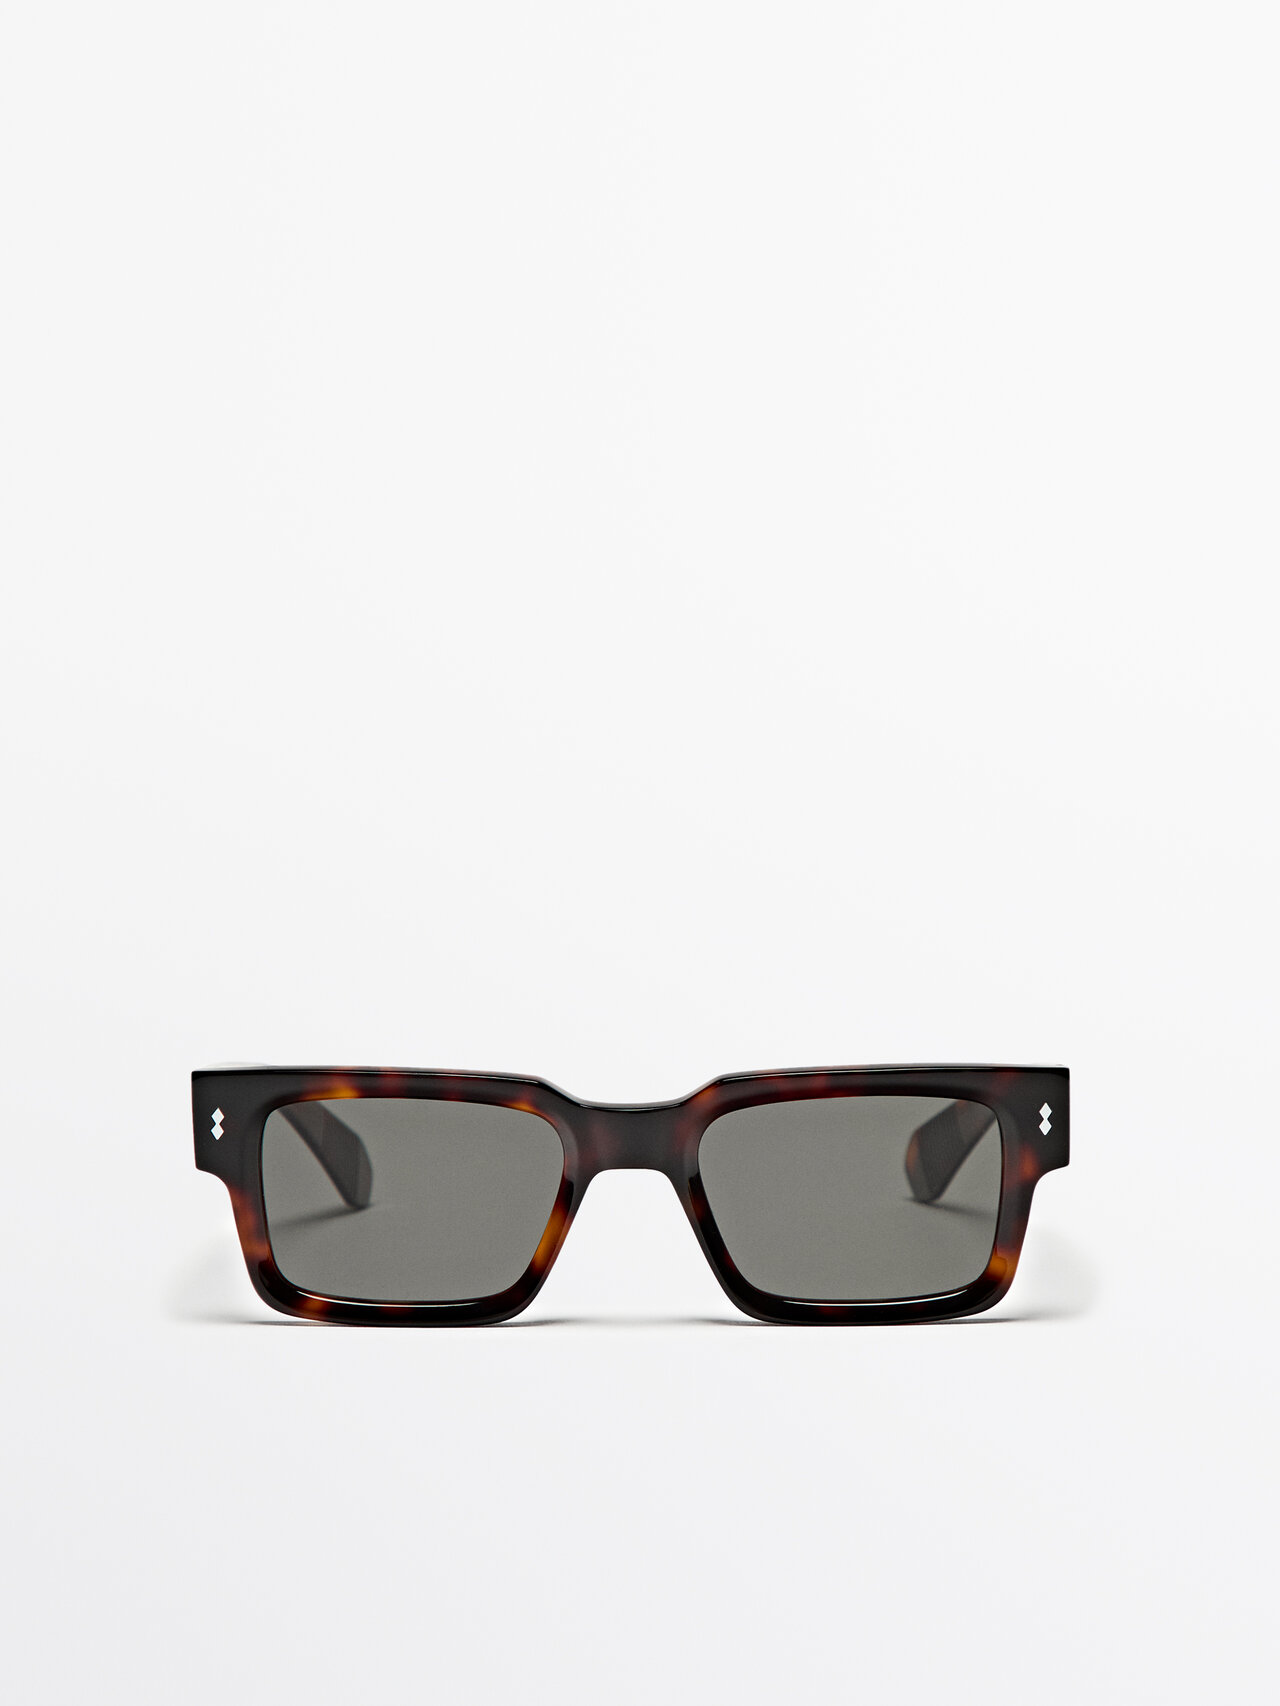 Square tortoiseshell effect sunglasses